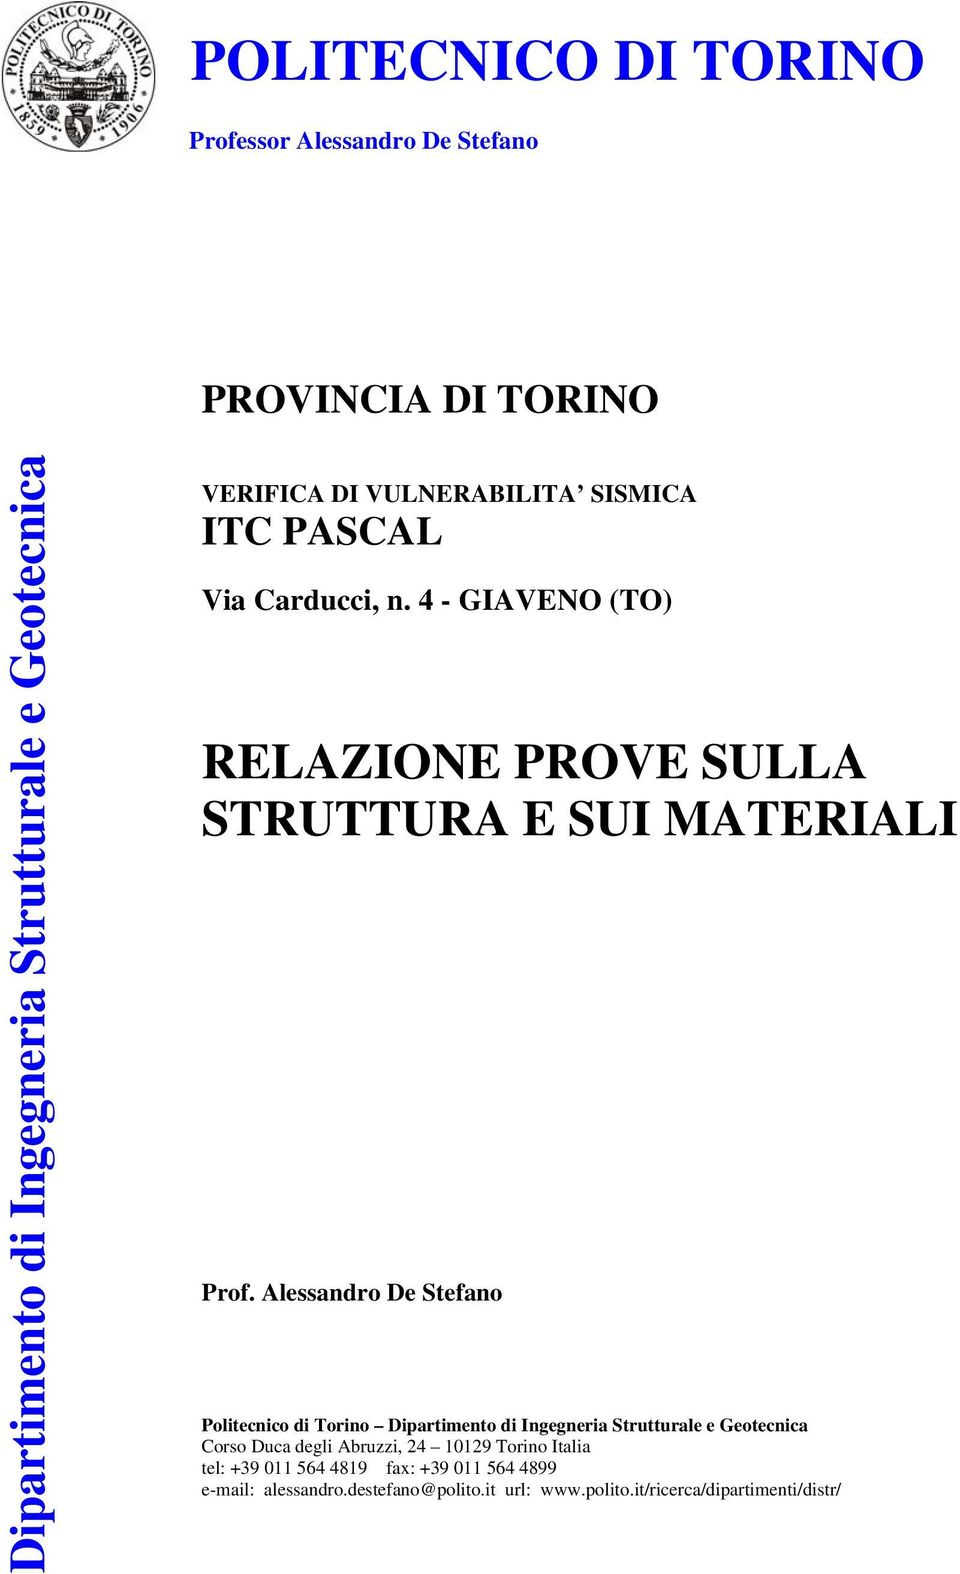 Alessandro De Stefano Politecnico di Torino Dipartimento di Ingegneria Strutturale e Geotecnica Corso Duca degli Abruzzi, 24 10129